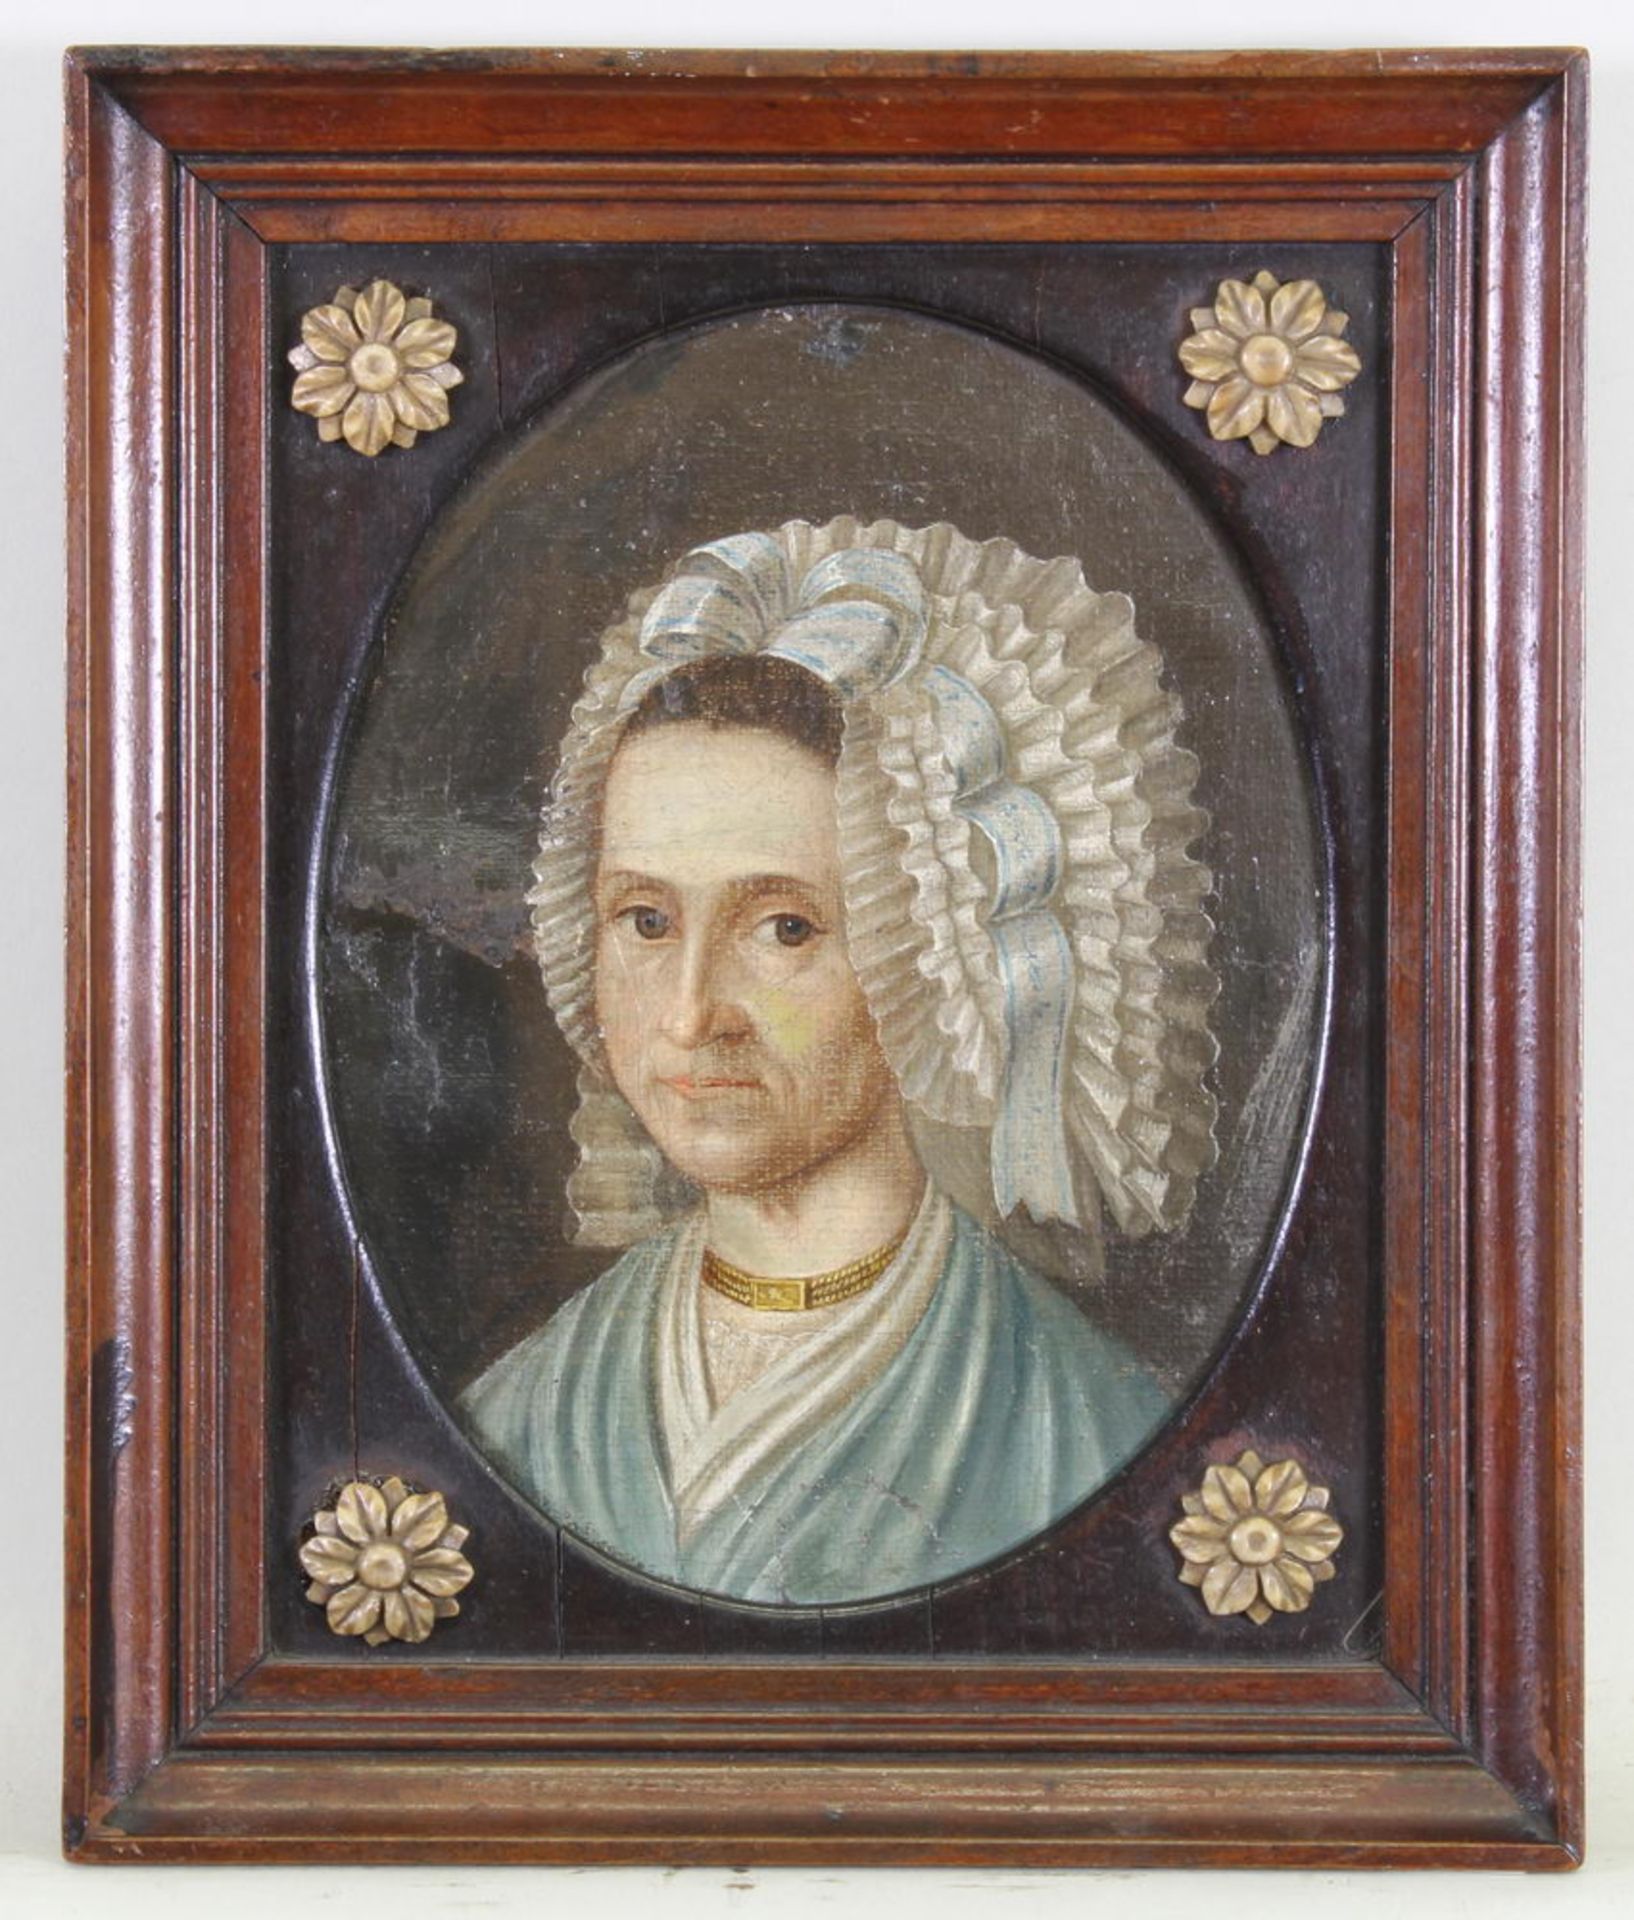 Porträtmaler (frühes 19. Jh.), "Porträt einer Dame", Öl auf Leinwand, auf Karton kaschiert, 17